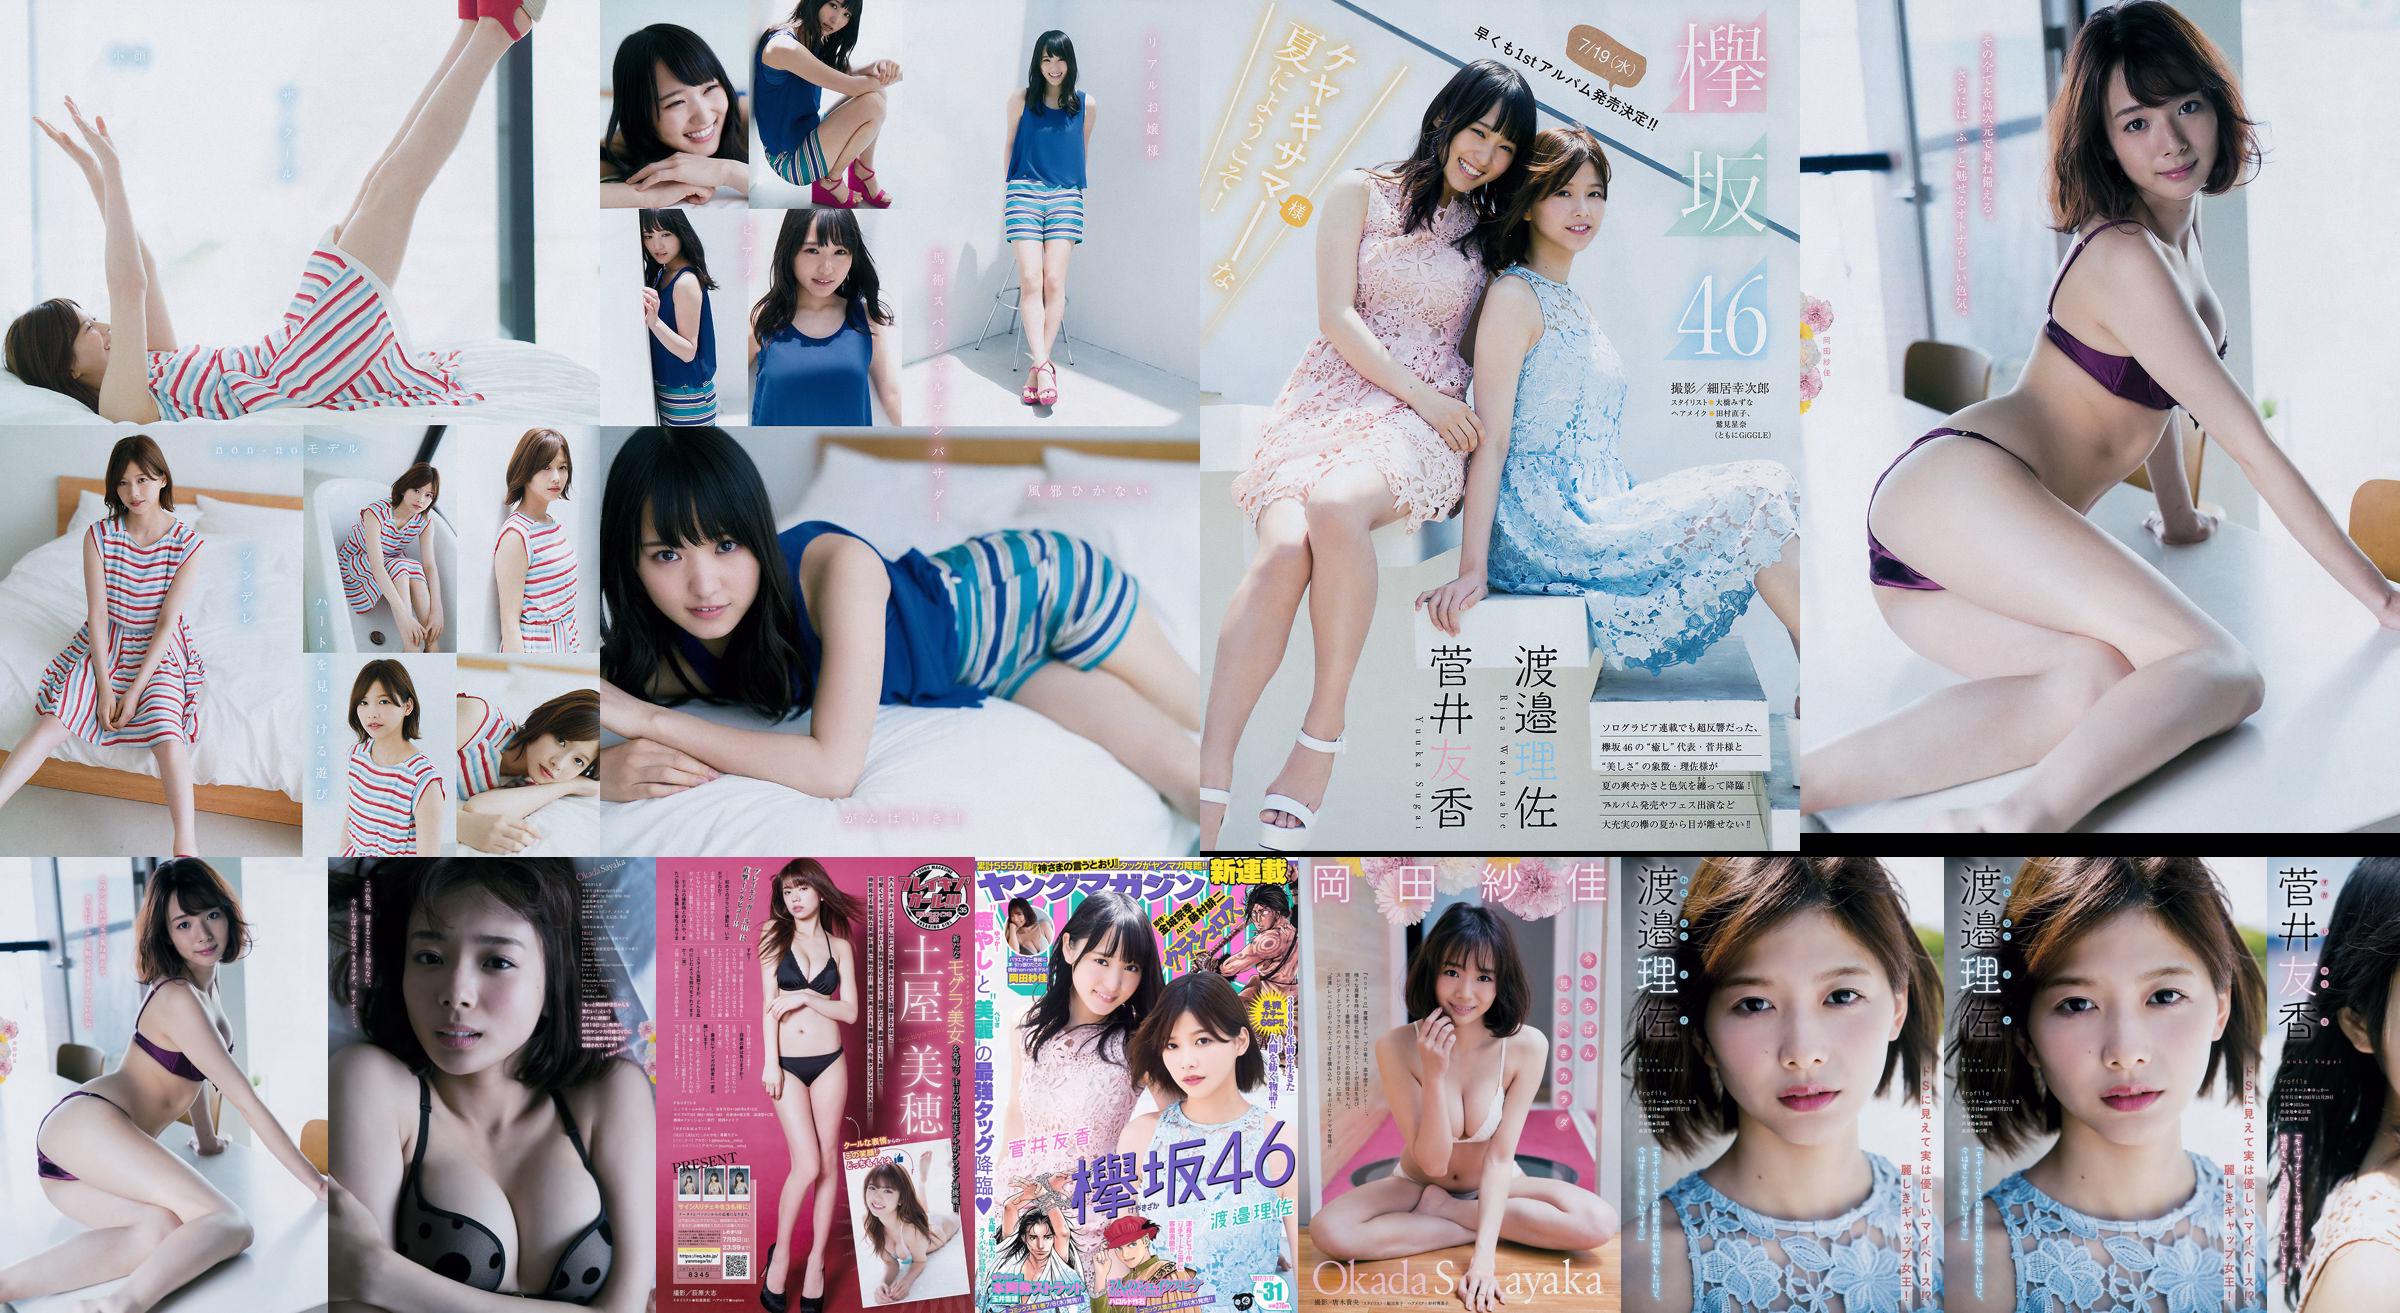 [Young Magazine] Watanabe Risa, Sugai Yuka, Okada Saika 2017 nr 31 Photo Magazine No.e619c3 Strona 1